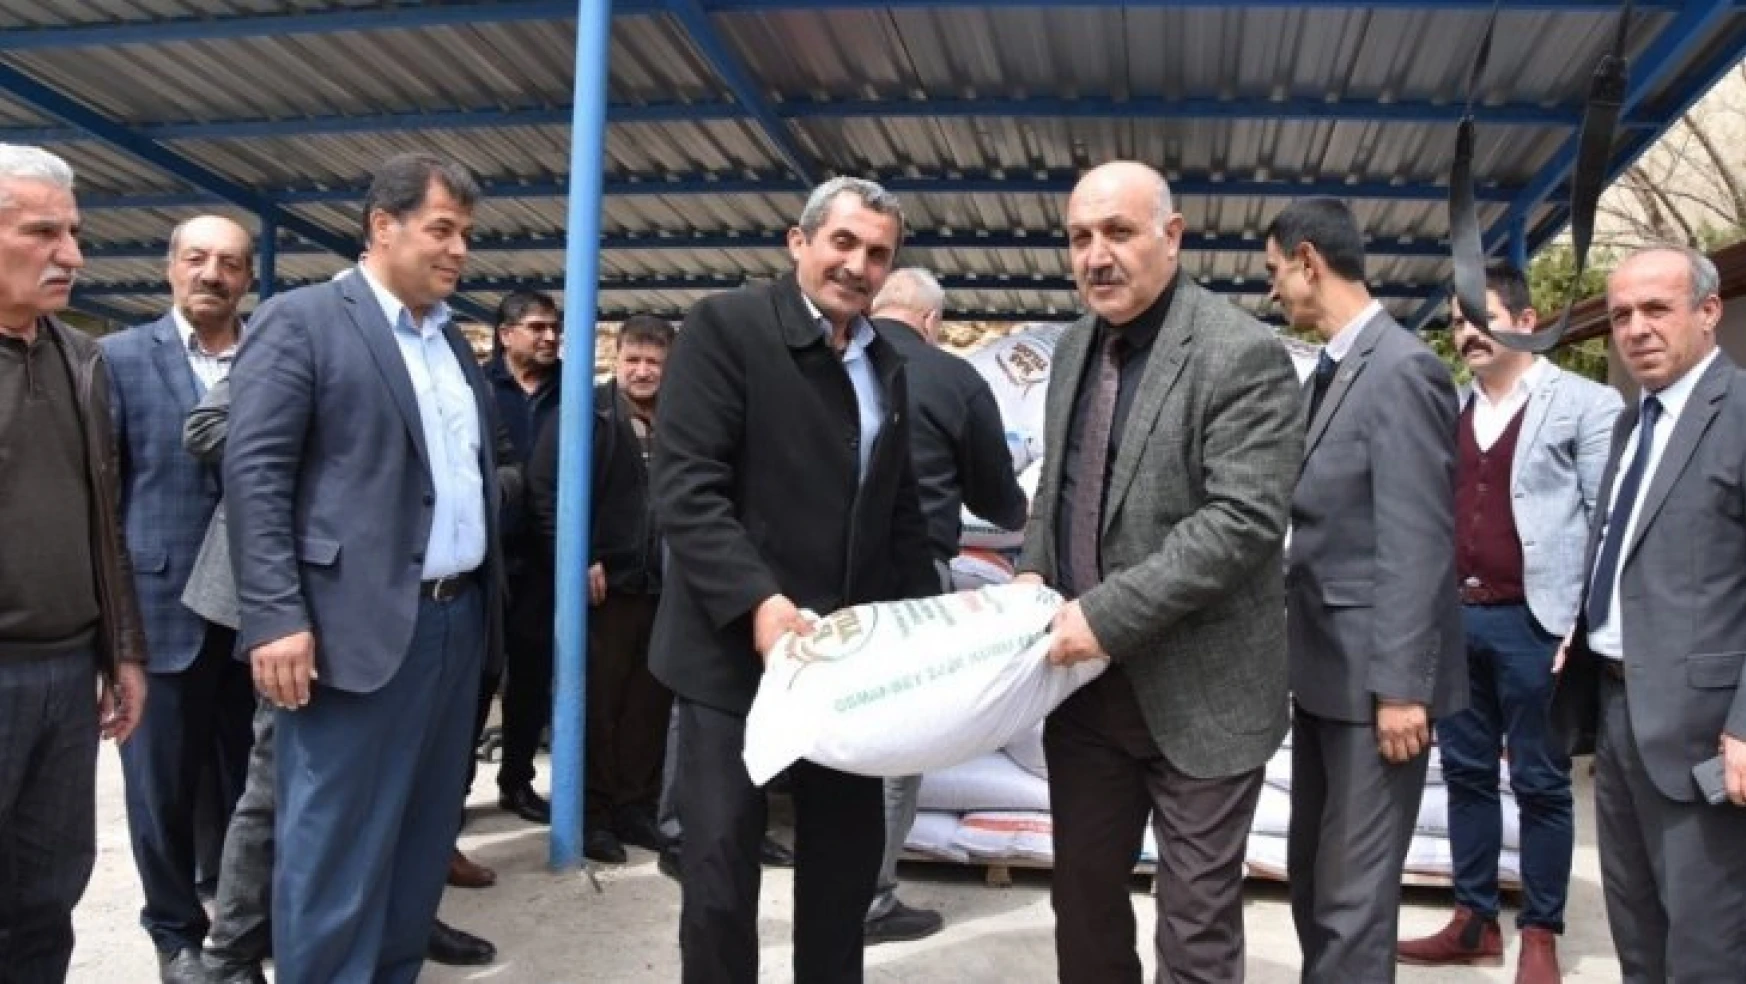 Doğanşehir'de yüzde 75 hibeli kuru fasulye tohumu dağıtıldı